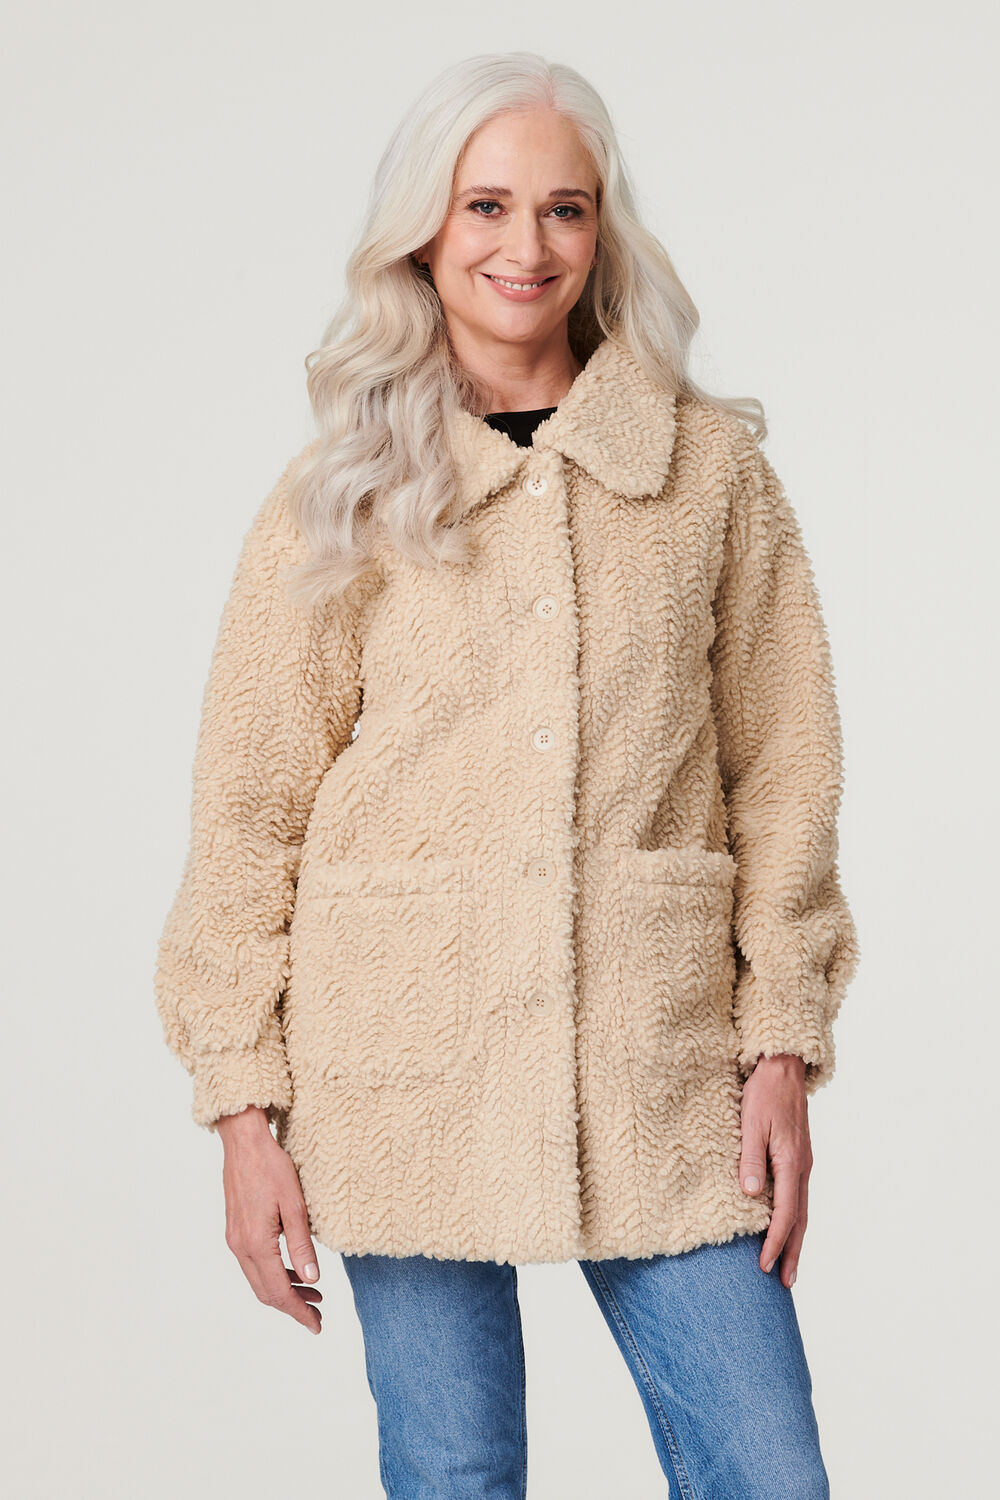 Izabel London Women’s Beige Textured Faux Fur Teddy Coat, Size: 14